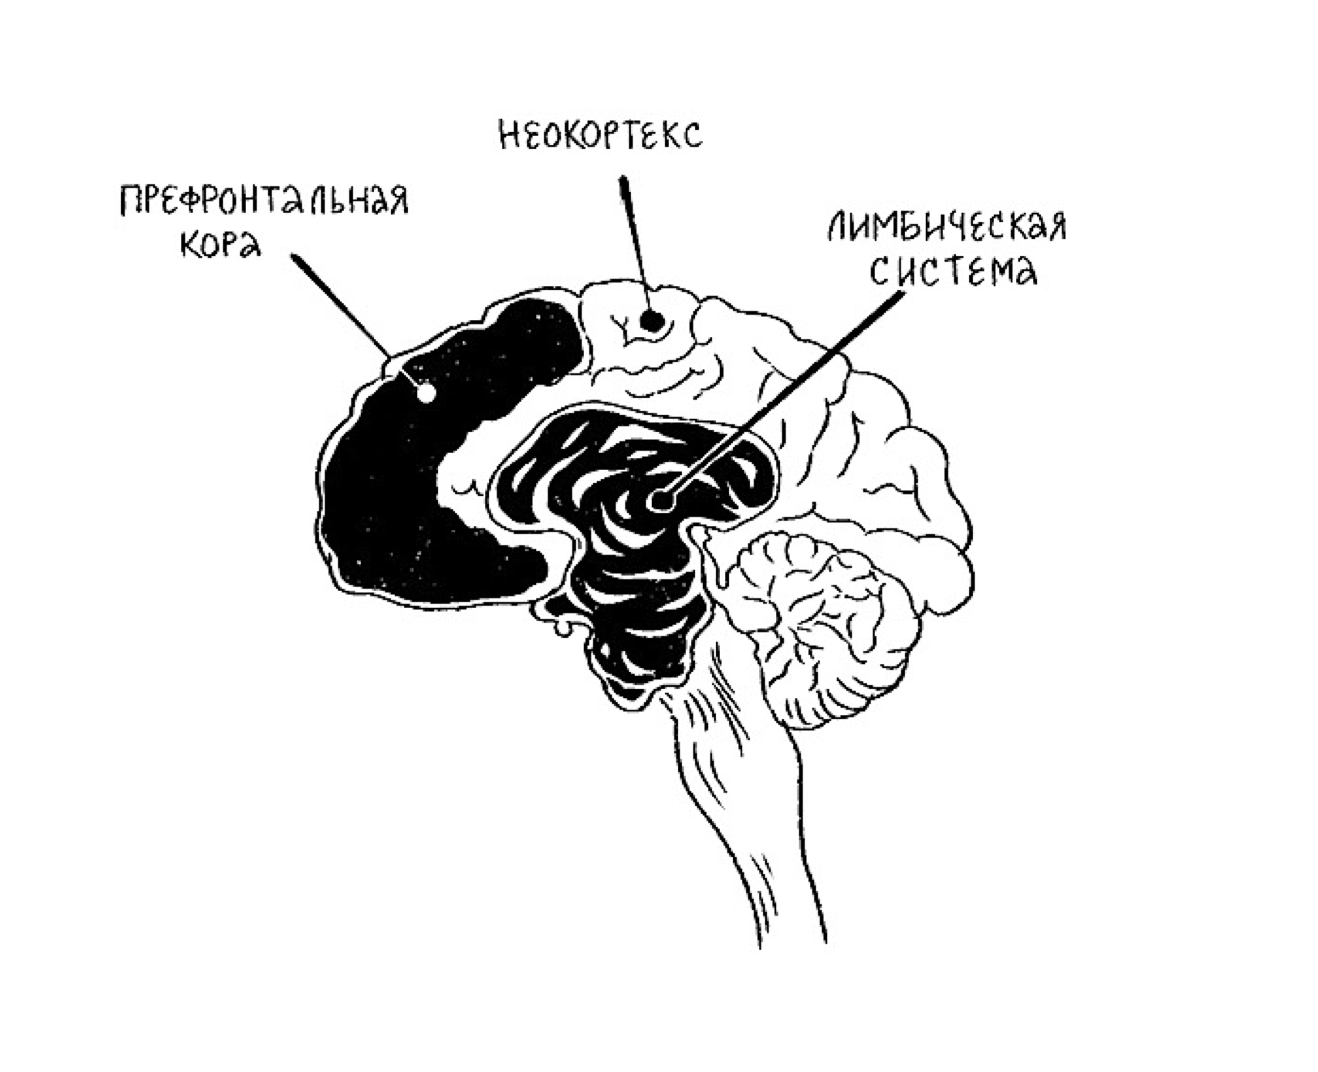 Лимбическая система и неокортекс мозга. Изгибы мозга